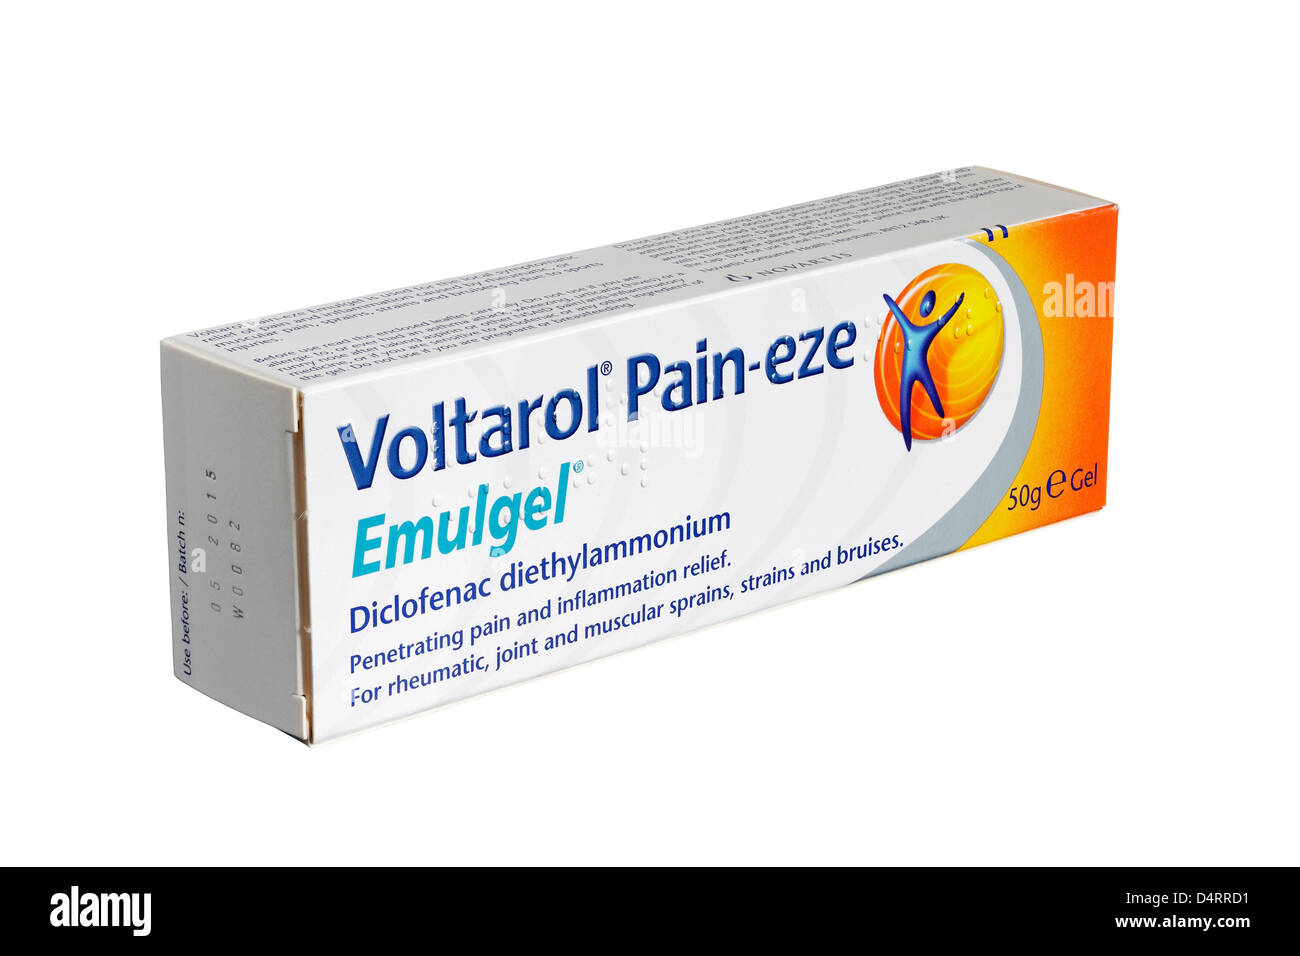 Voltarol Schmerz-Eze Emulgel isoliert auf weißem Hintergrund Stockfoto